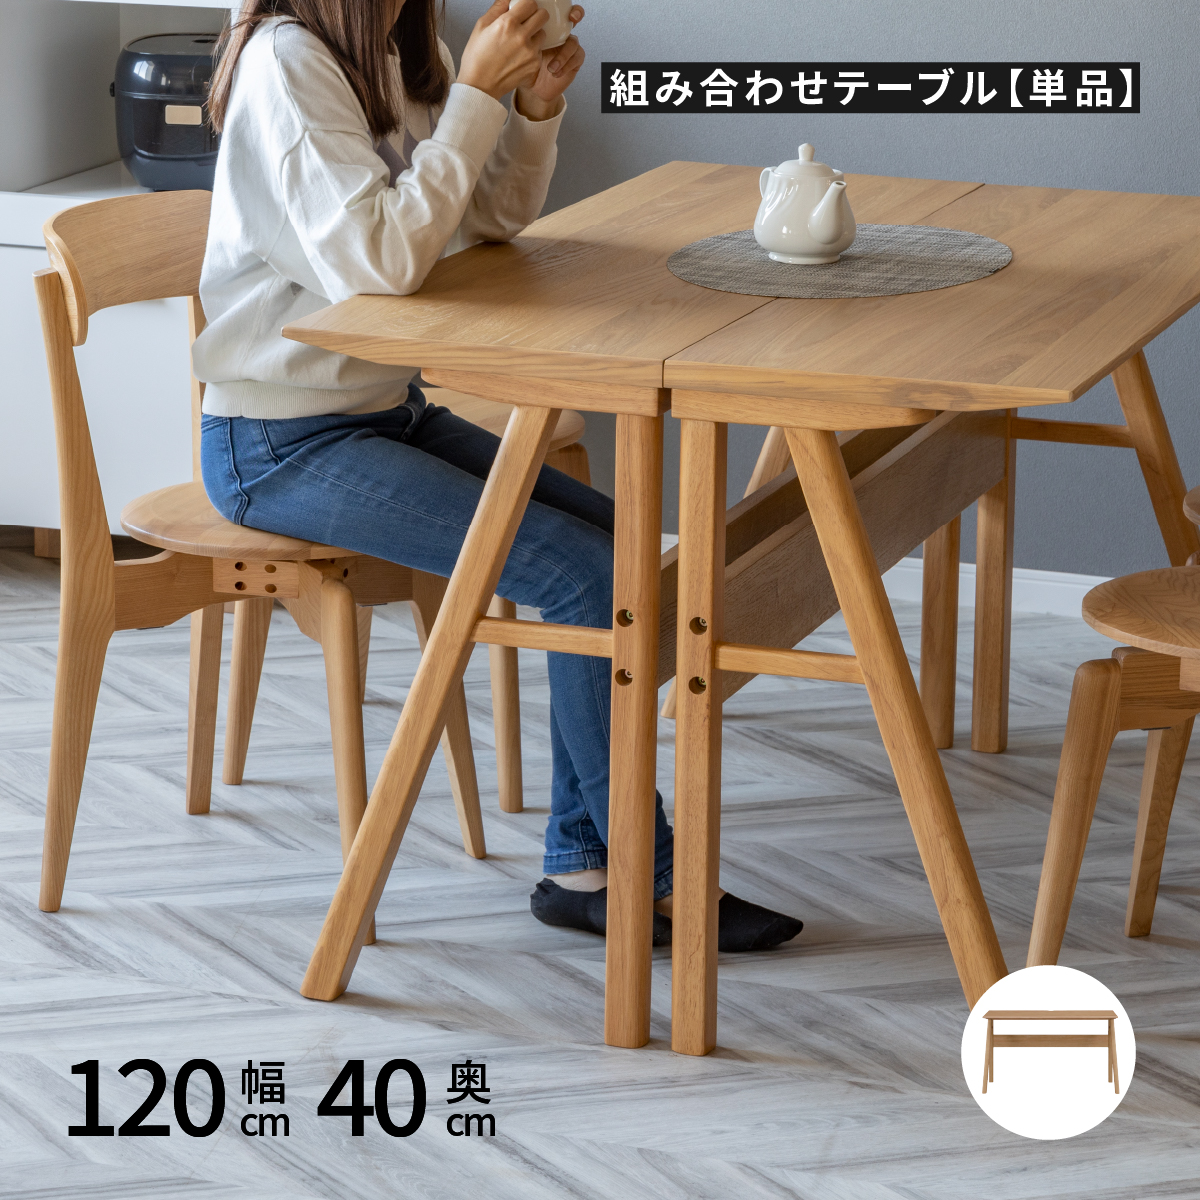 ダイニングテーブル 高さ 70 北欧 カウンター 木製 幅120 cm 長方形